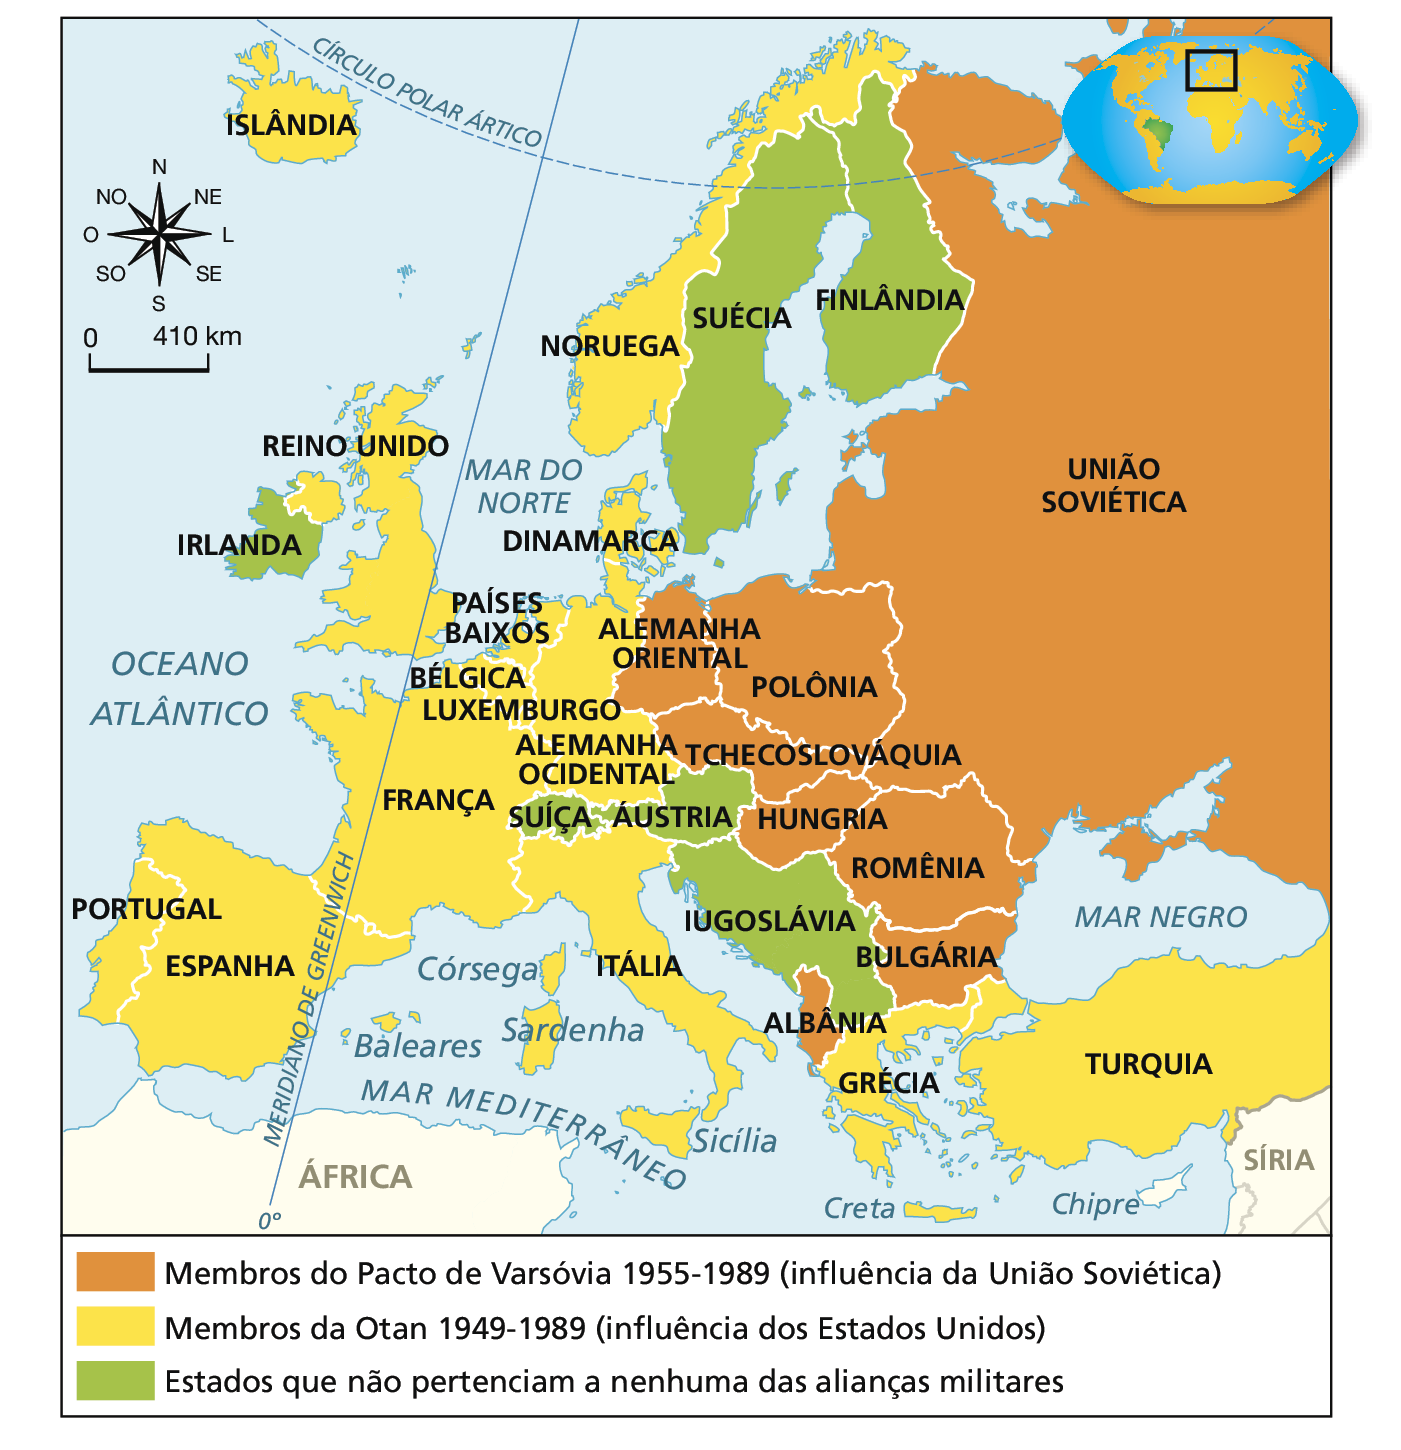 Mapa. Otan e Pacto de Varsóvia (de 1949 a 1989). Representação do continente europeu. Em laranja, 'Membros do Pacto de Varsóvia de 1955 a 1989 (influência da União Soviética)', compreendendo os seguintes países: União Soviética, Polônia, Alemanha Oriental, Tchecoslováquia, Hungria, Romênia, Albânia e Bulgária. Em amarelo, 'Membros da Otan de 1949 a 1989 (influência dos Estados Unidos)', compreendendo os seguintes países: Turquia, Grécia, Noruega, Luxemburgo, Alemanha Ocidental, Itália, Países Baixos, Bélgica, França, Espanha, Portugal, Reino Unido e Islândia. Em verde, 'Estados que não pertenciam a nenhuma das alianças militares', compreendendo os seguintes países: Suécia, Finlândia, Áustria, Iugoslávia, Suíça e Irlanda. No canto superior esquerdo, rosa dos ventos e escala de 0 a 410 quilômetros.